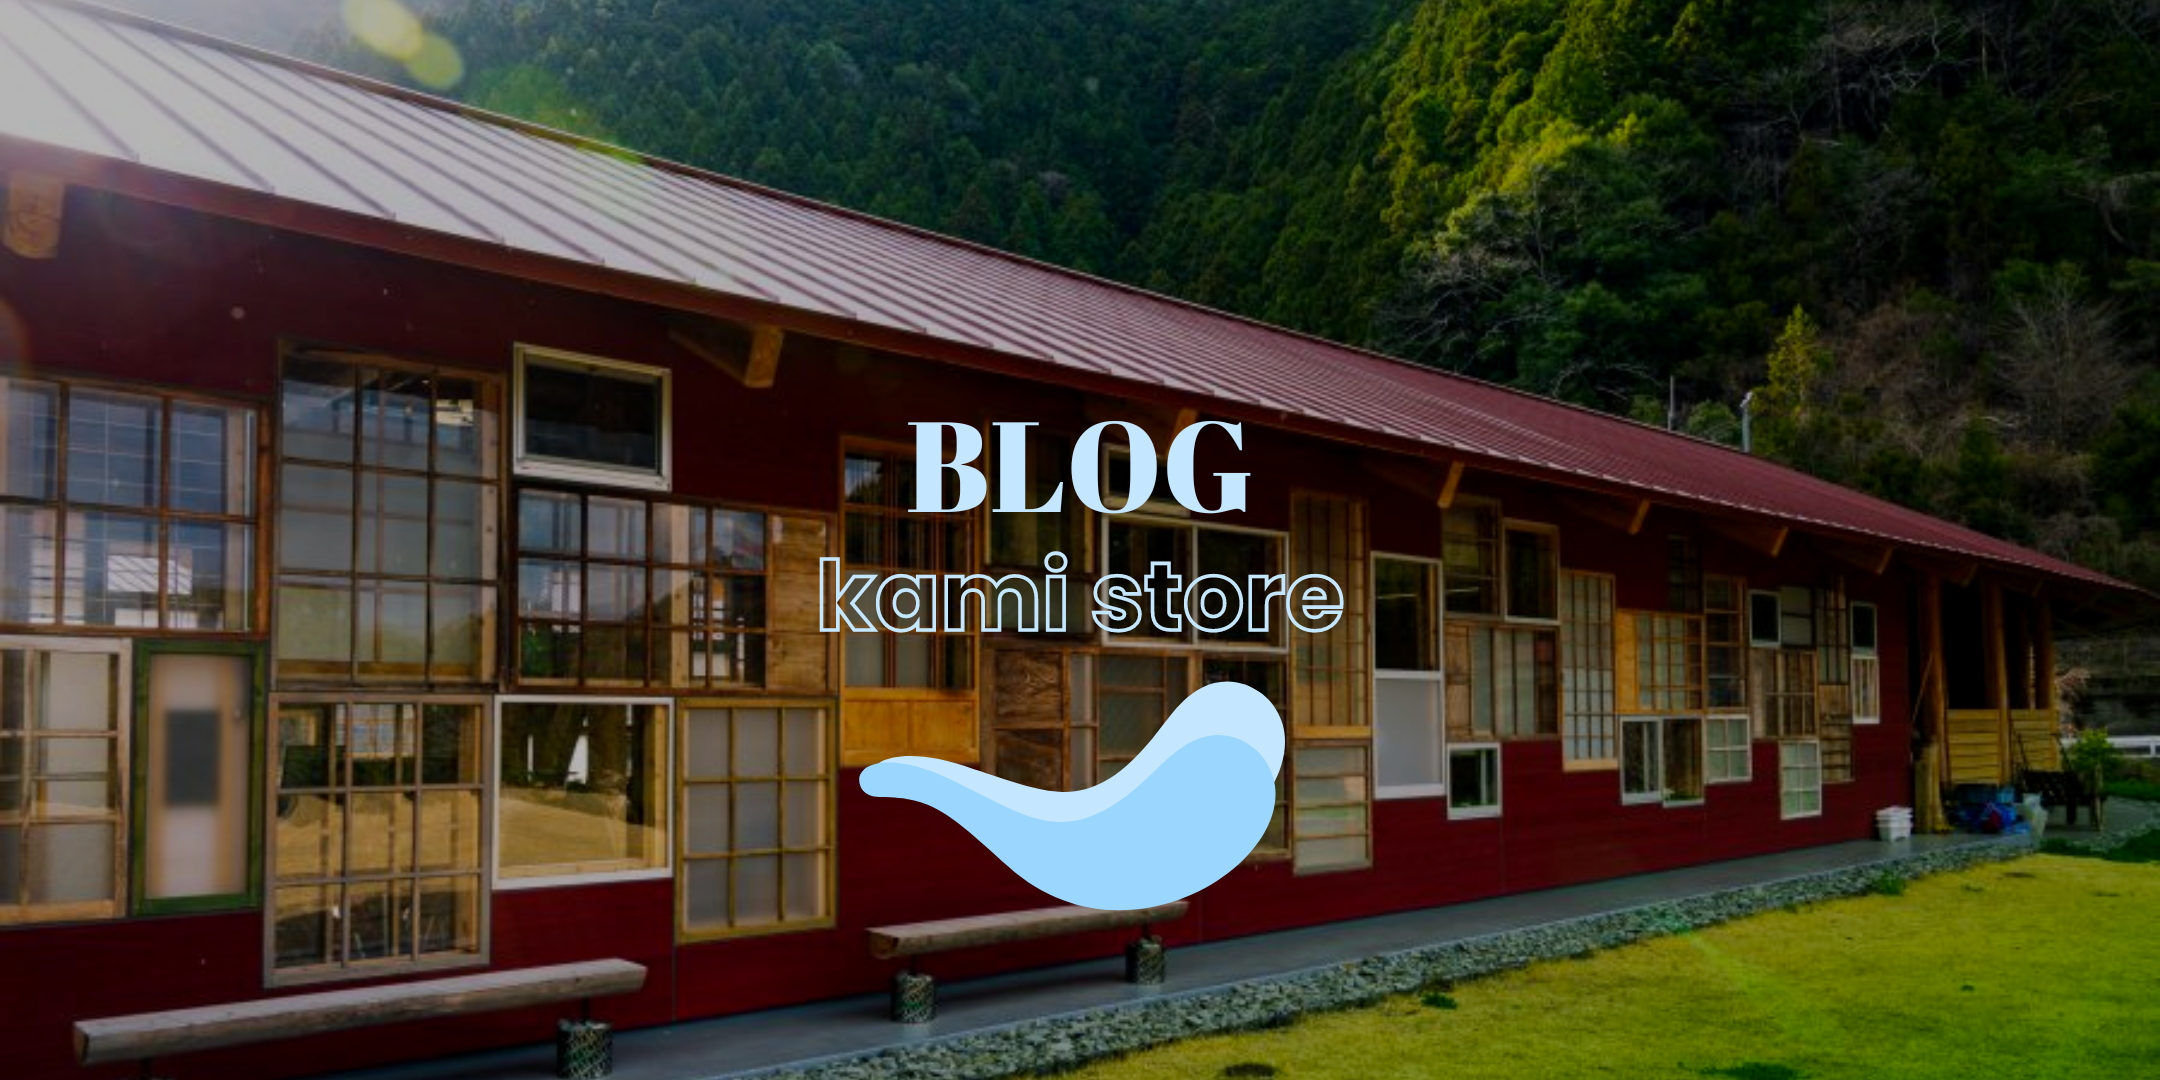 The Road to Kamikatsu: de blog voor winkels die zich inzetten voor de planeet